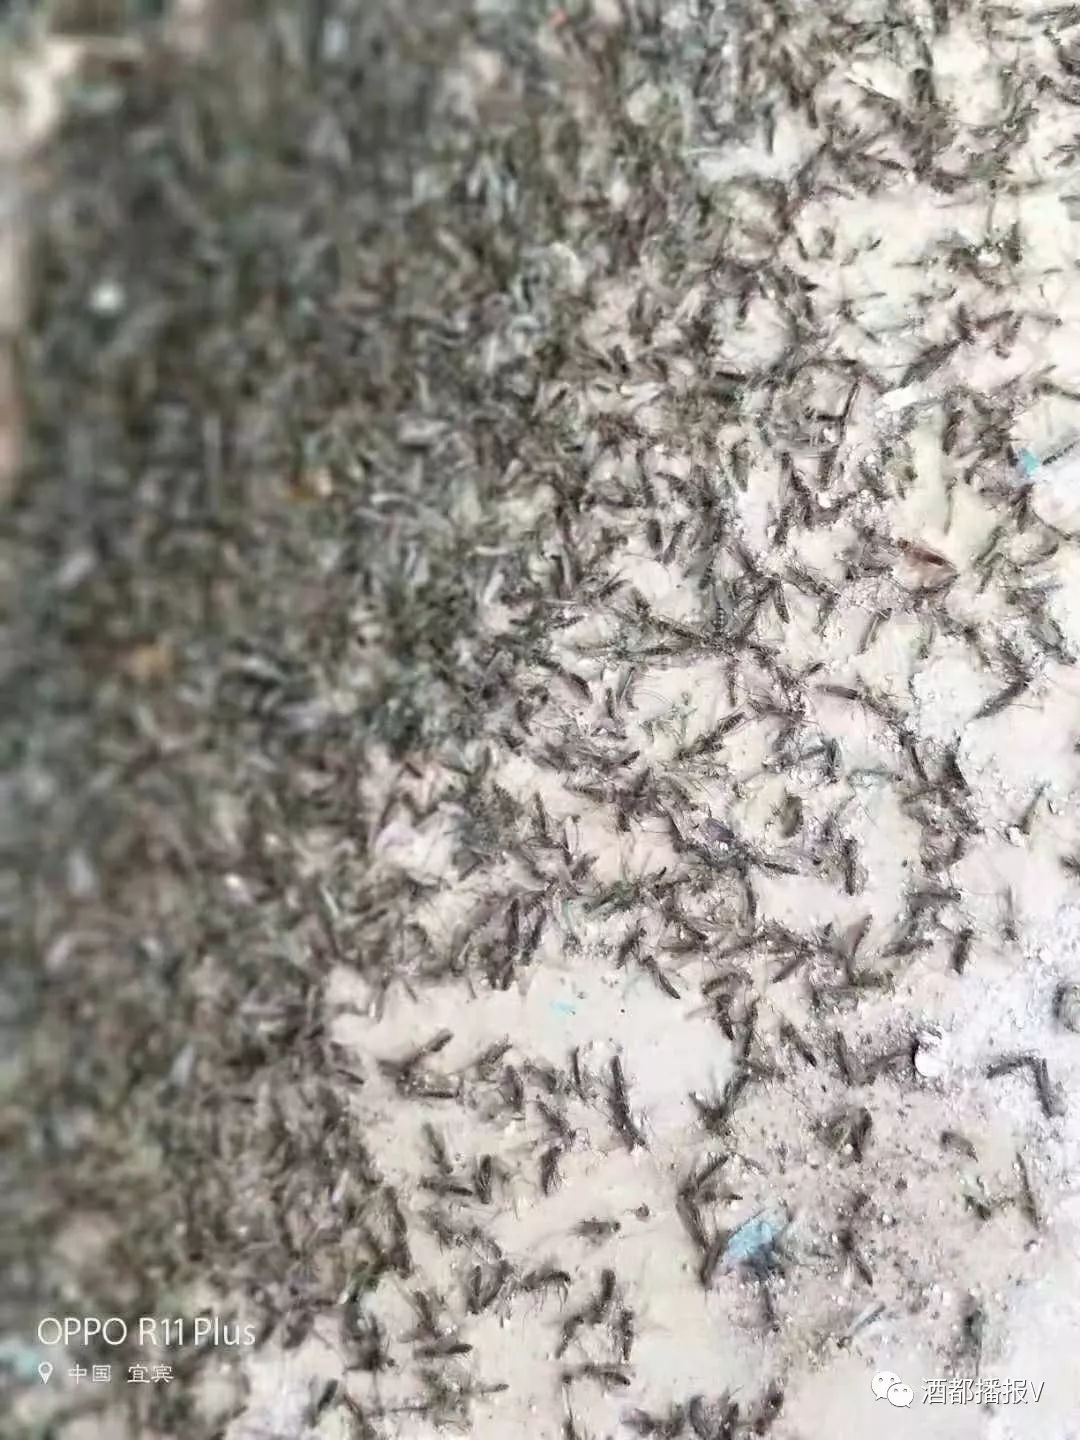 宜宾一条河边发现大量蚊子密集恐怖症患者慎入